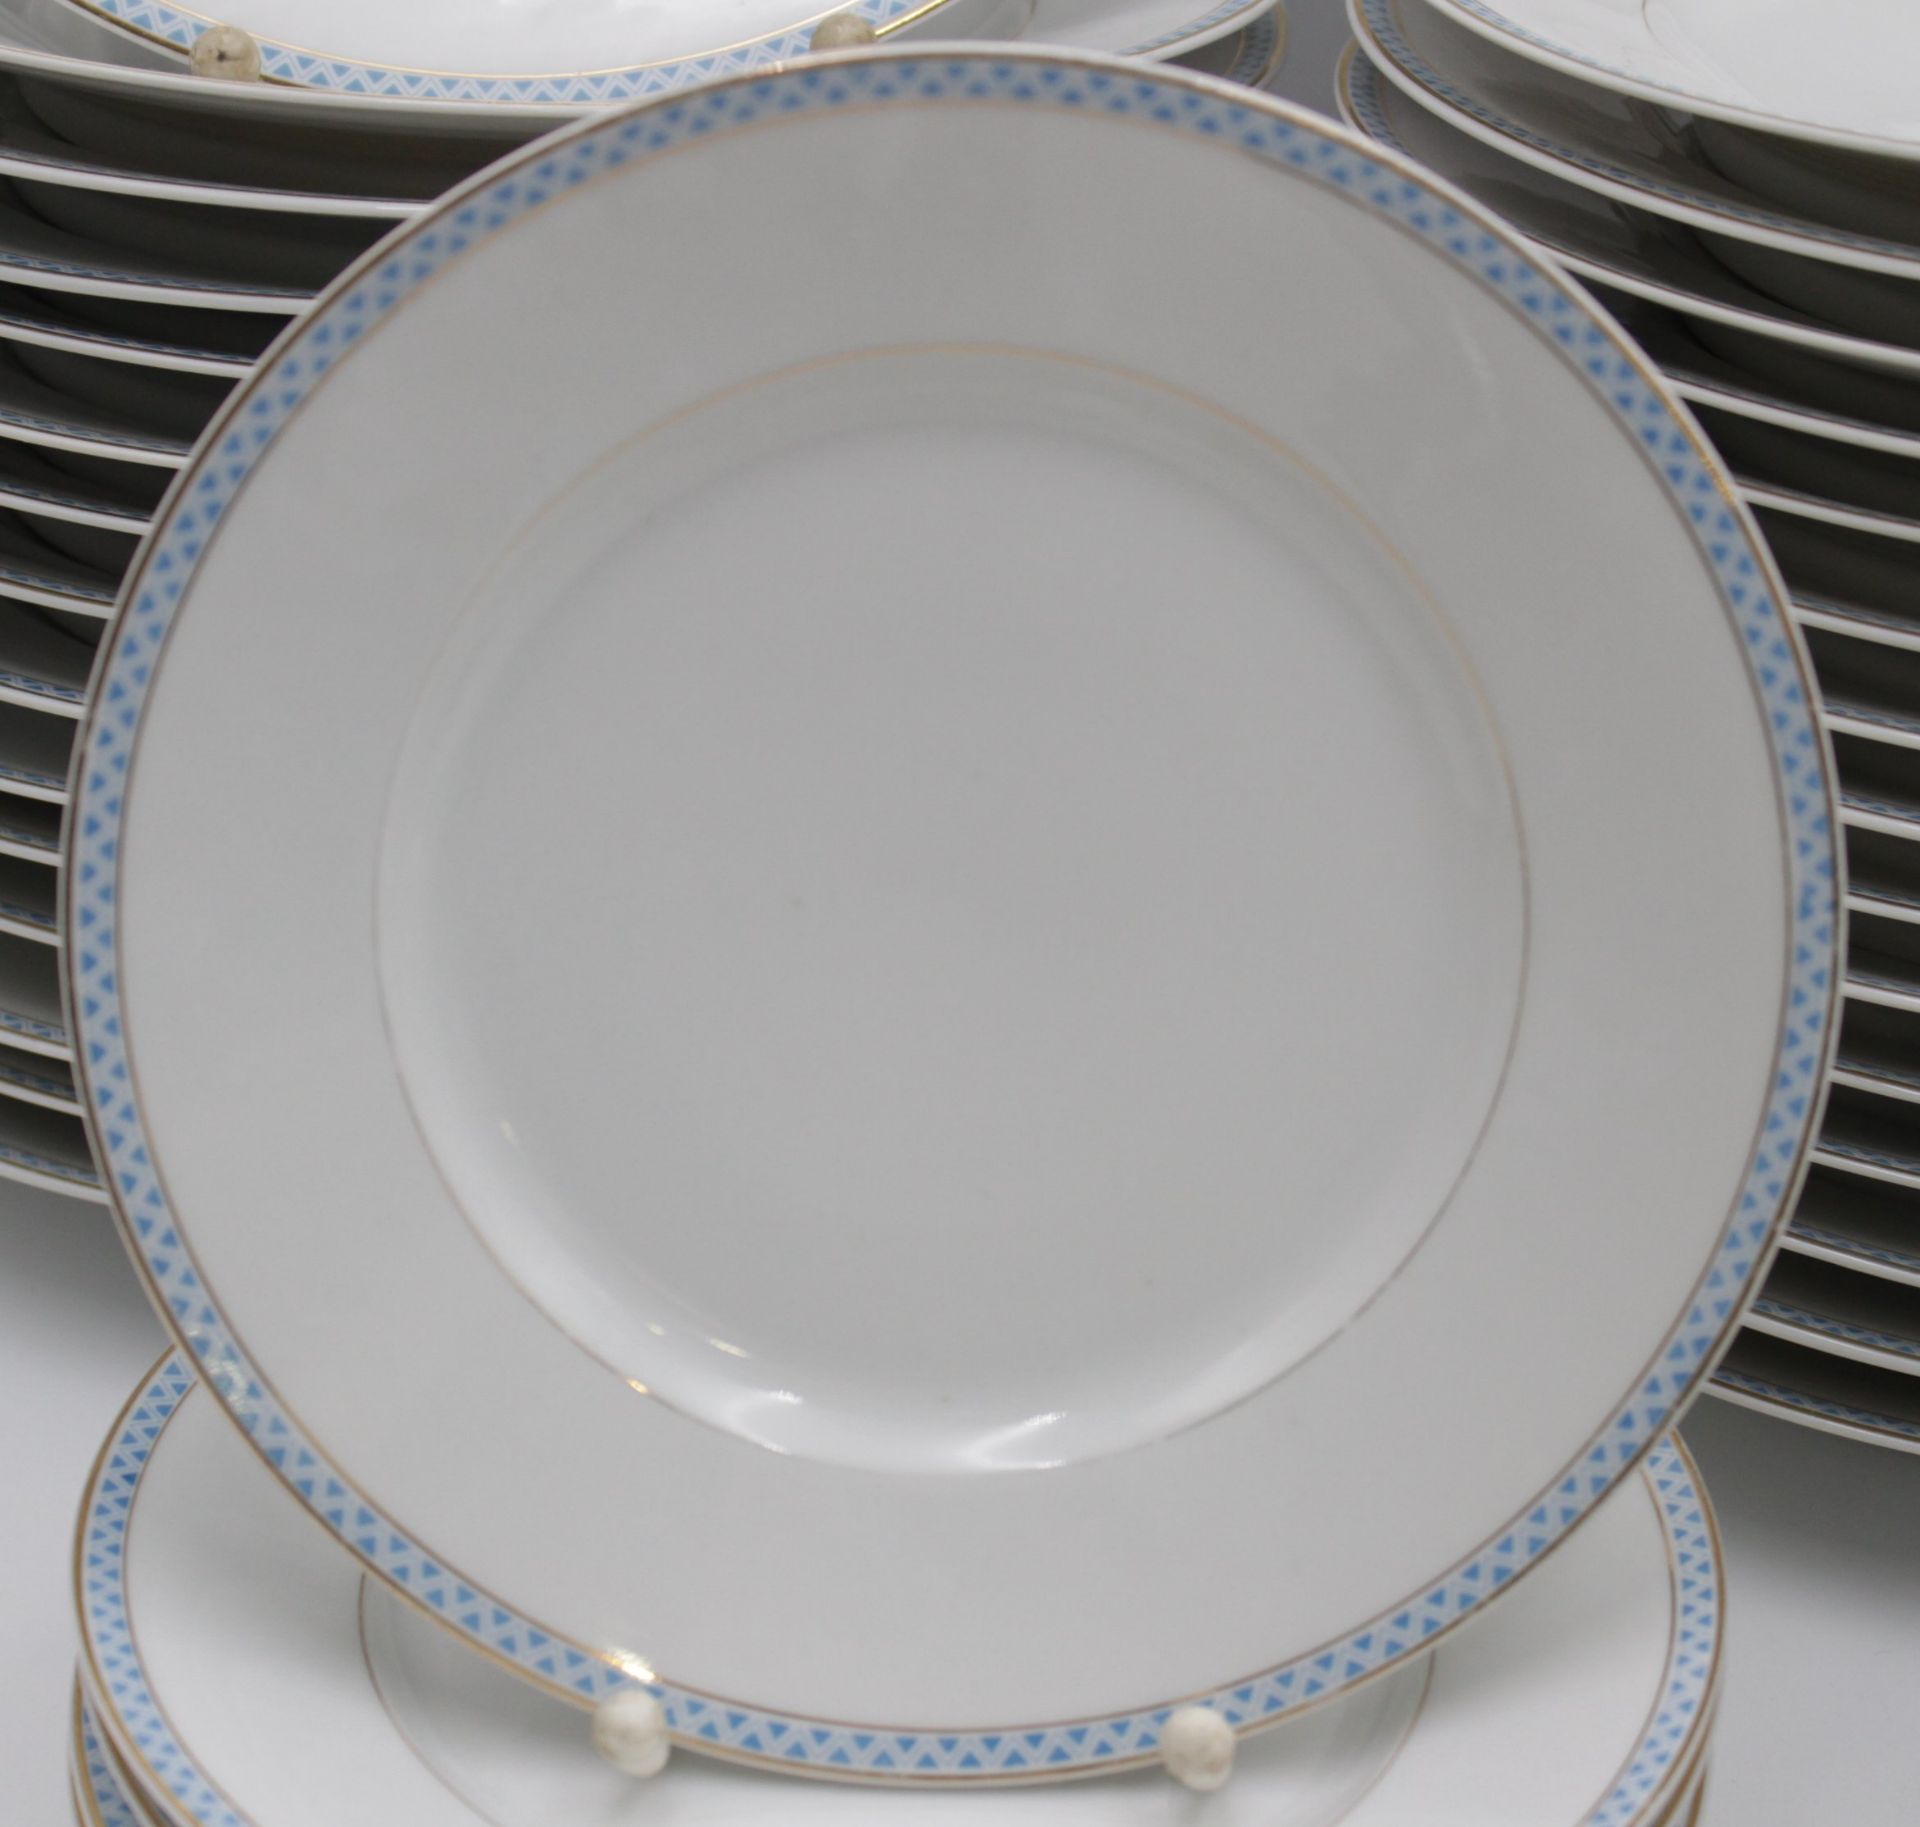 Speiseservice um 1910, blauer Rand mit Goldzier, runde Platte, 2x gr. ovale Platten, kl. ovale Plat - Bild 4 aus 5